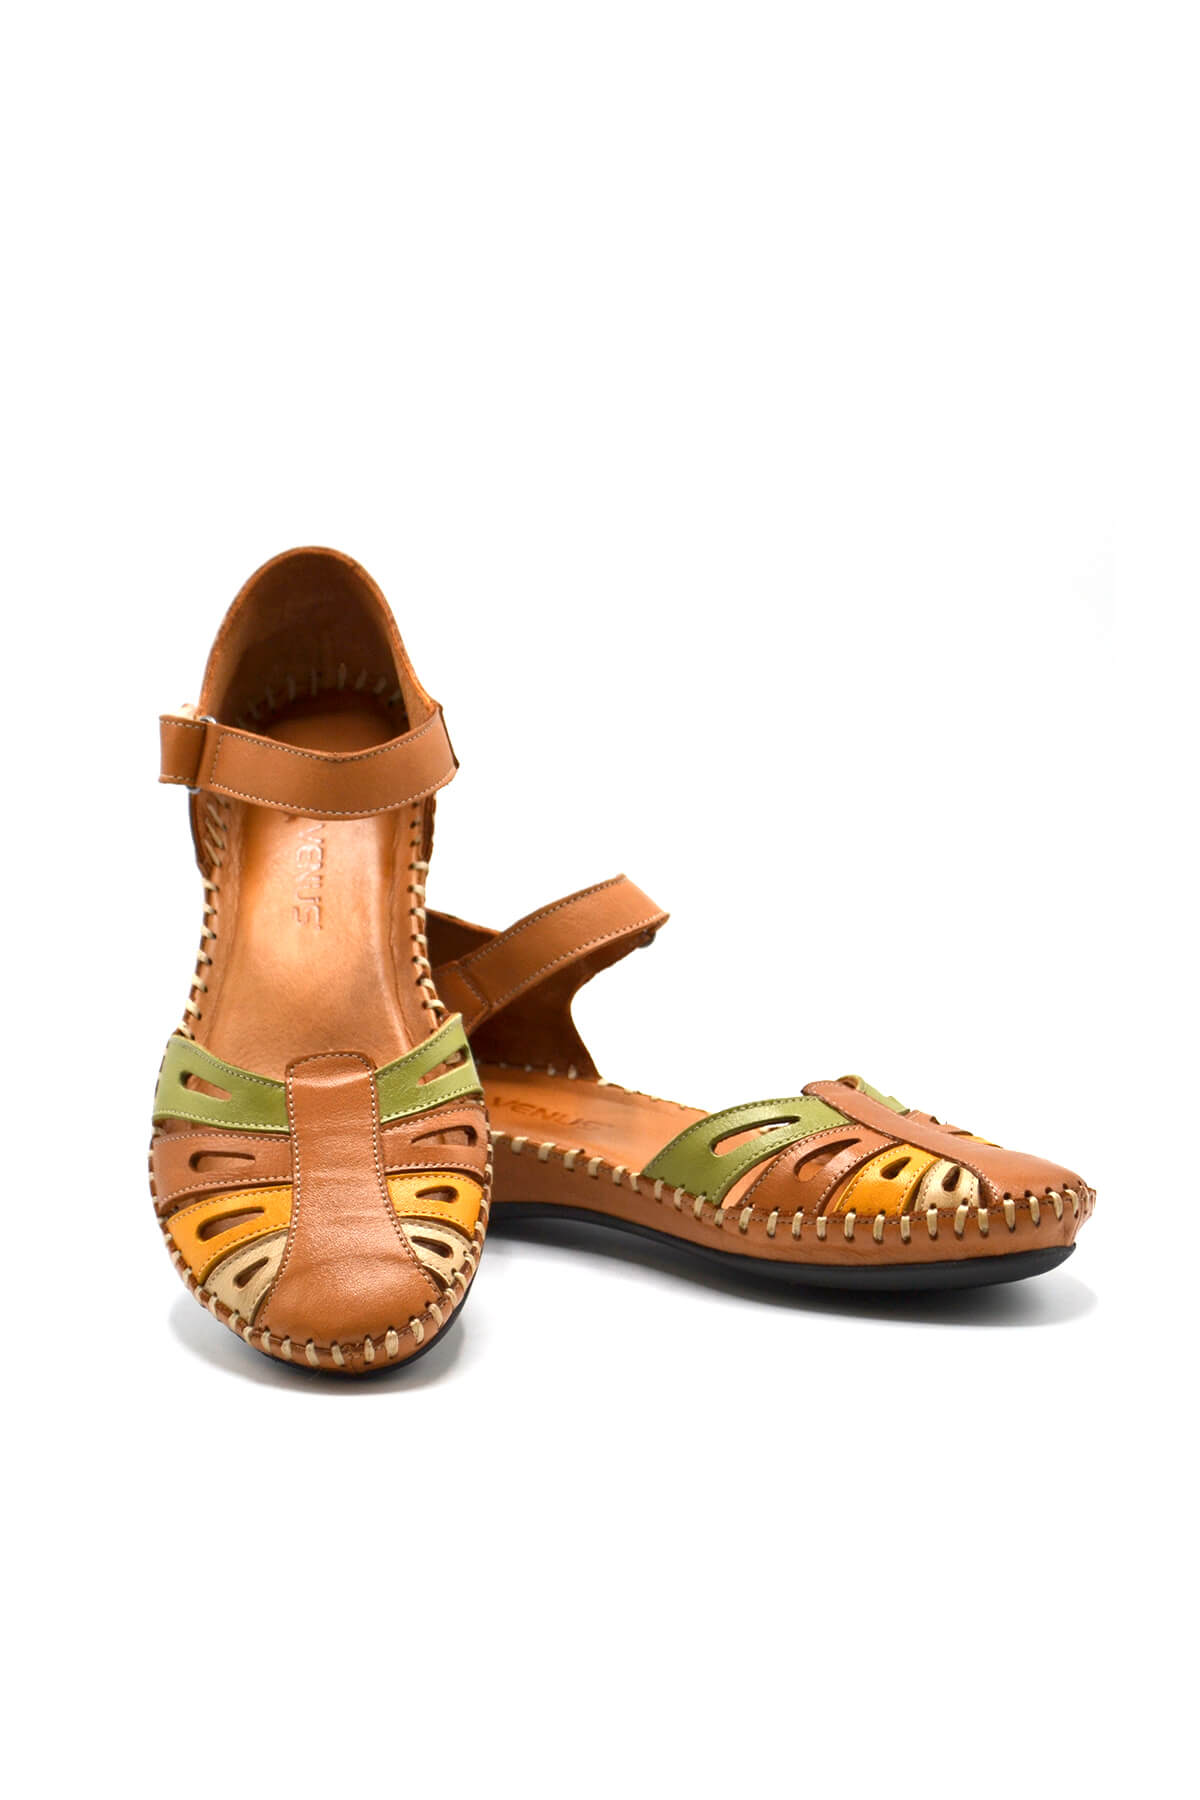 Kadın Comfort Deri Sandalet Taba 23033318Y - Thumbnail